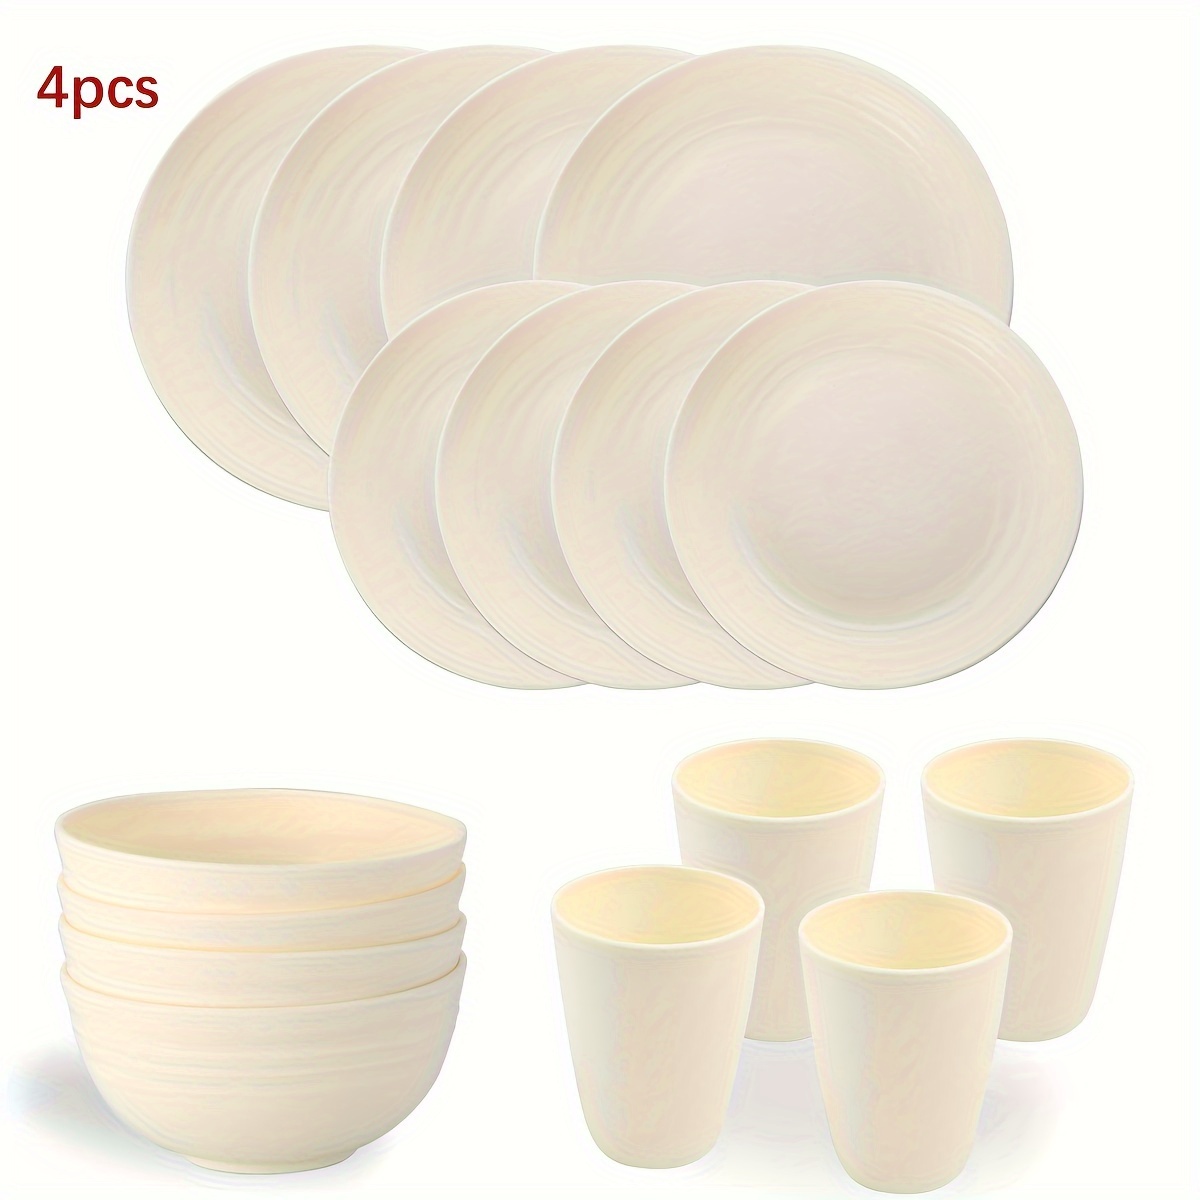 Ensemble de vaisselle en porcelaine Classic Oxford de Safdie & Co., blanc,  16 pièces HK02023EC